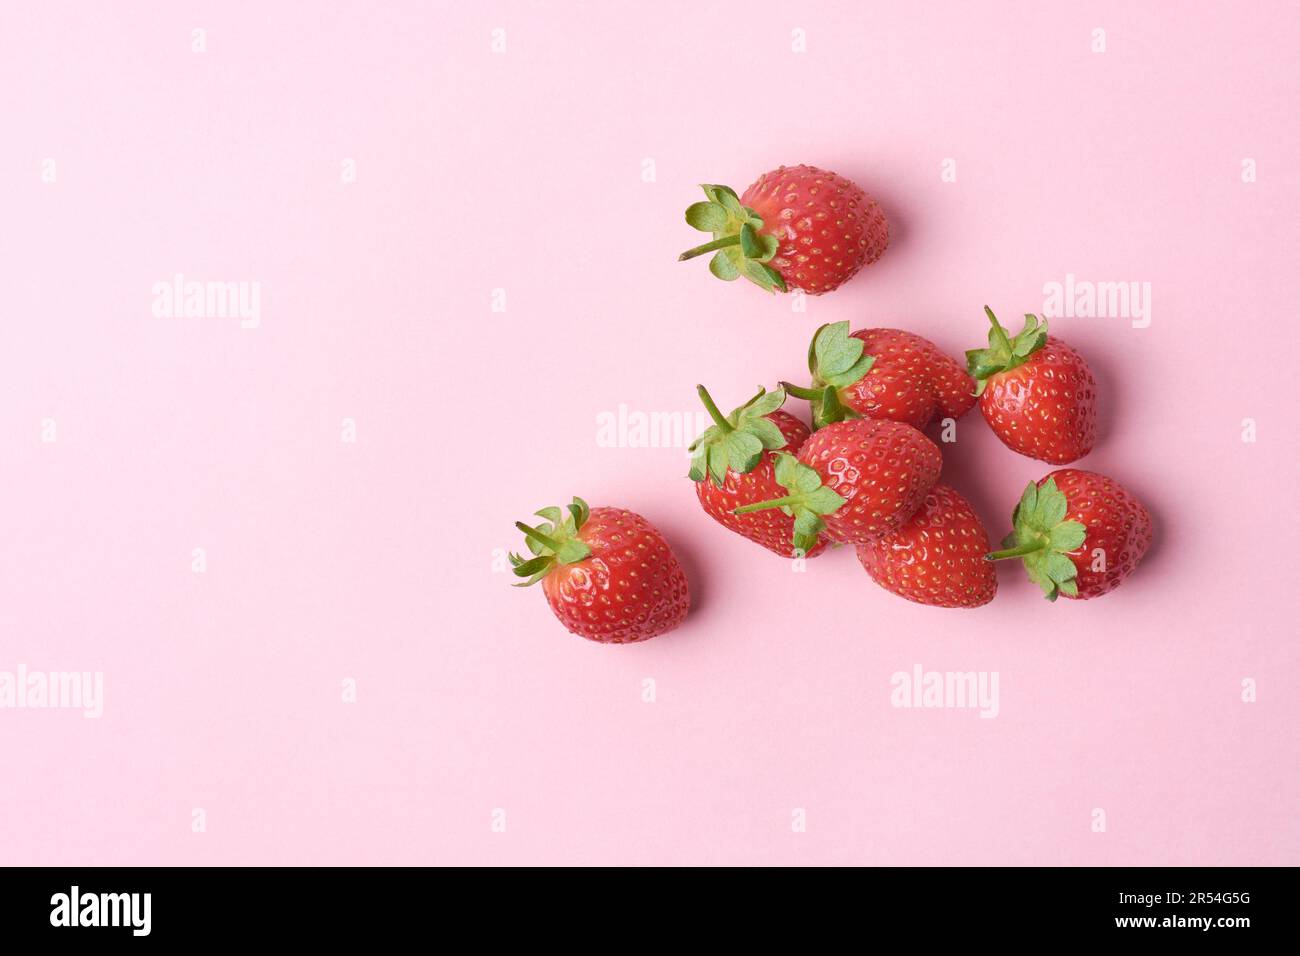 Erdbeeren auf pinkfarbenem Hintergrund, hellrote Farbe beliebte saftige Früchte mit süßem Geschmack und duftendem Aroma, gesund und sehr nahrhaft kulinarisch Stockfoto